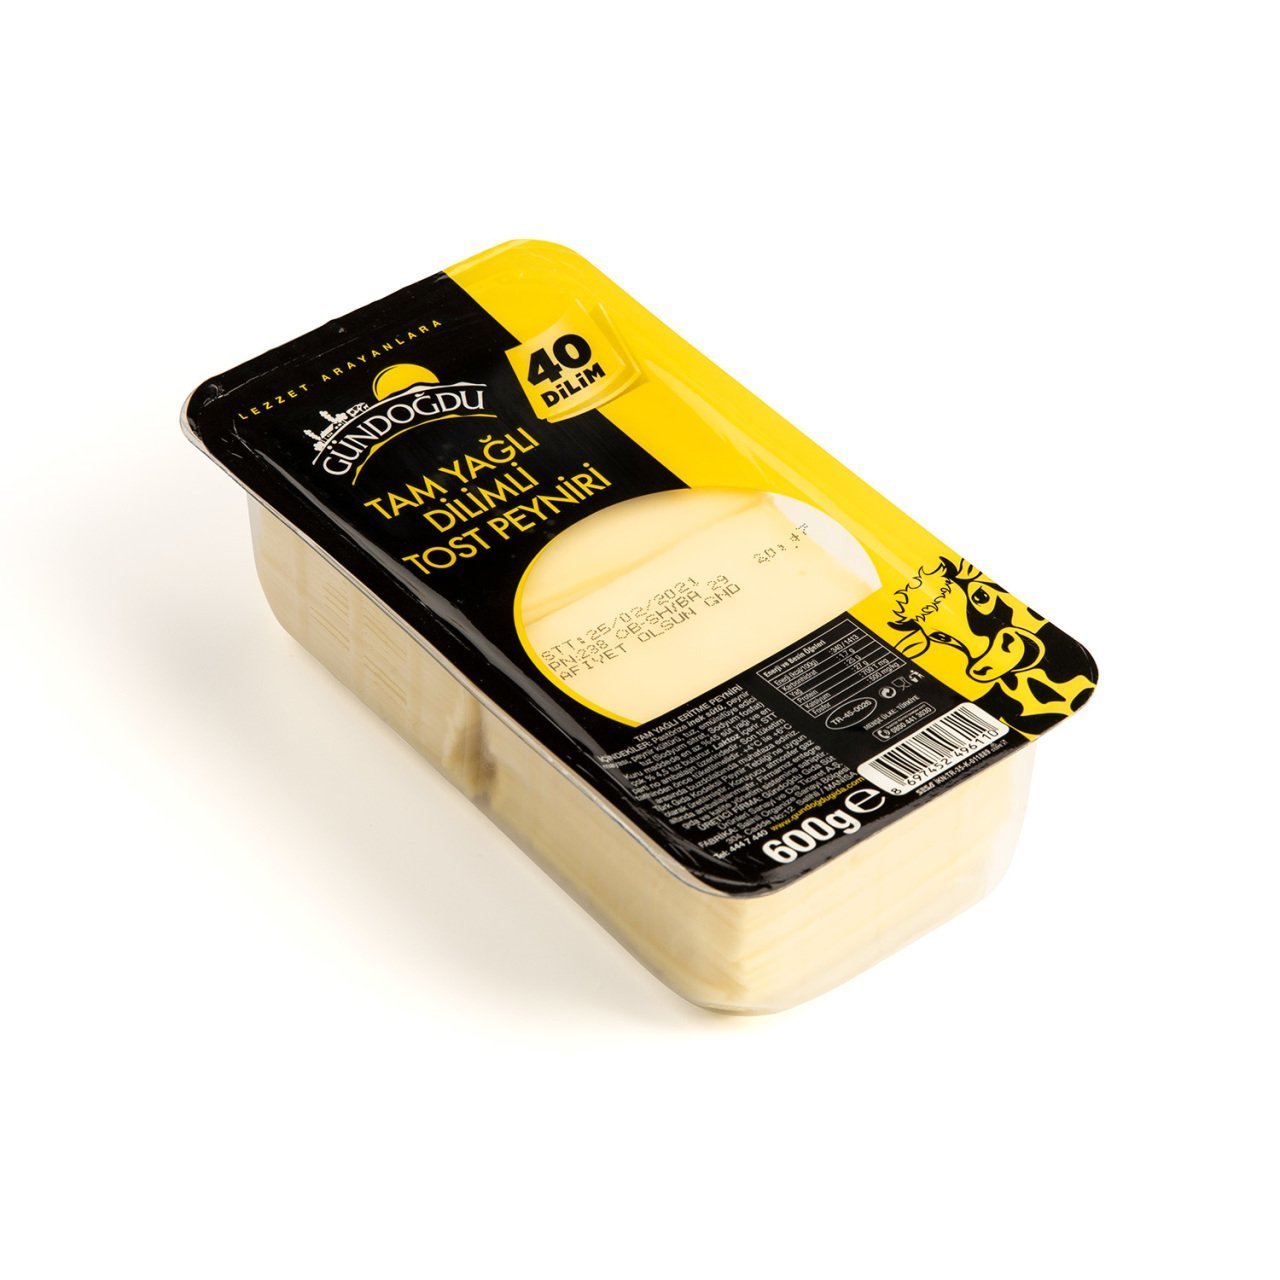 Gündoğdu Dilimli Tost Peyniri 600gr 6'lı